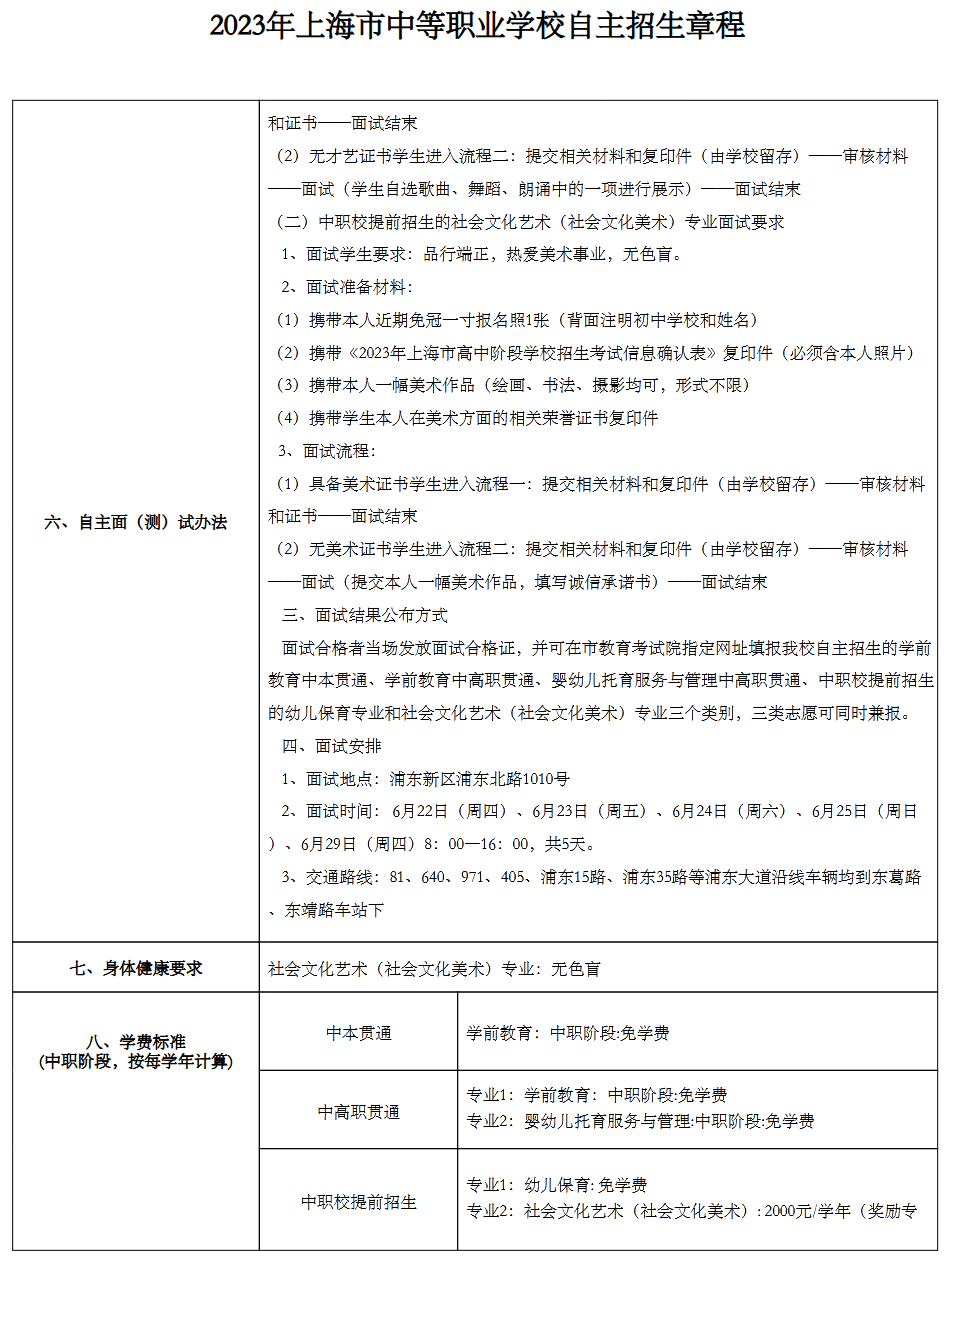 2023年上海新陆职业技术学校中考自主招生计划公布